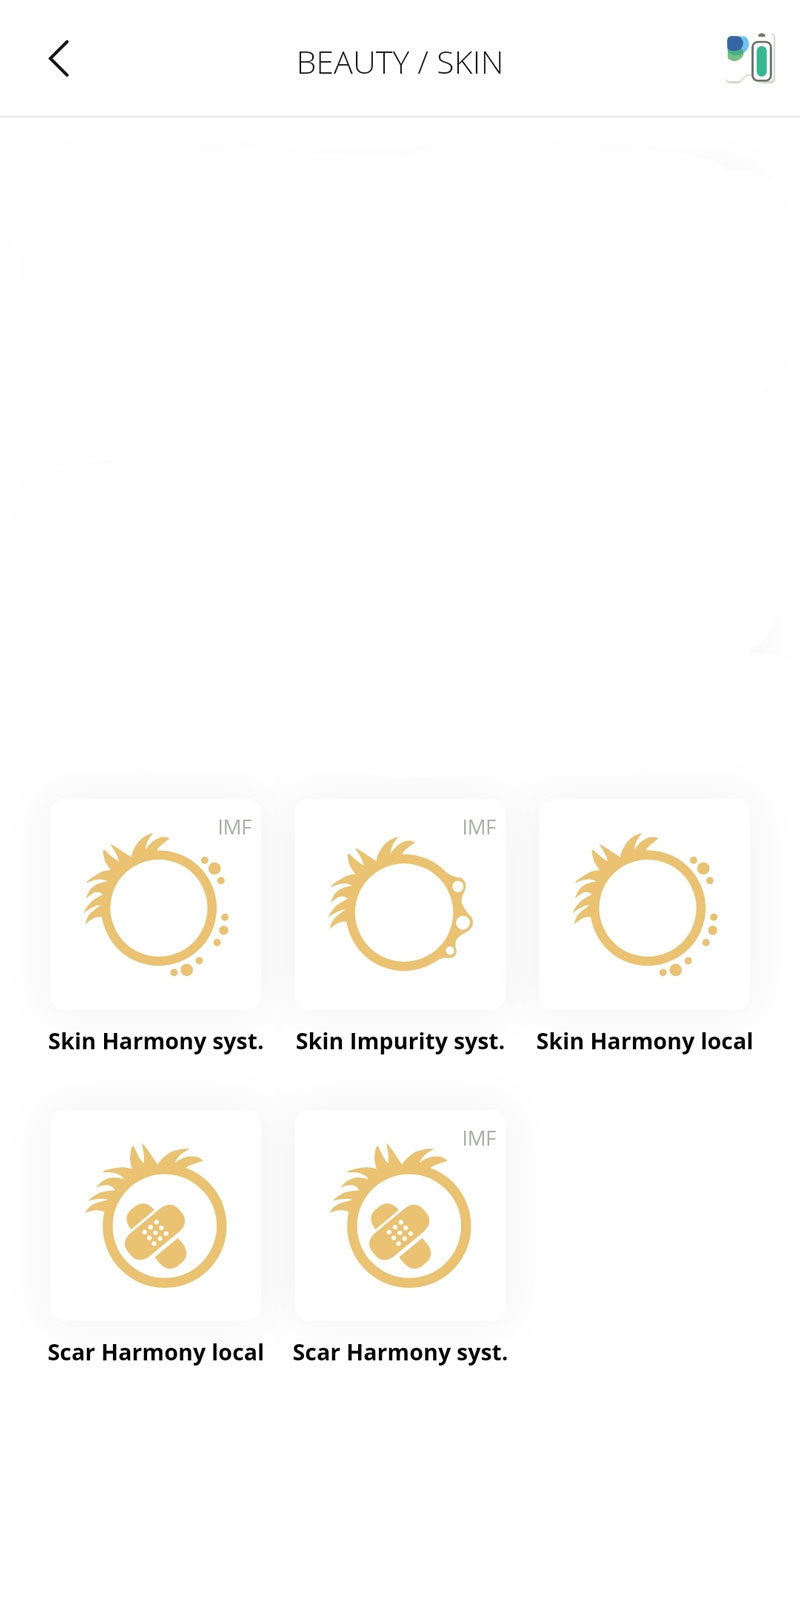 healy beauty skin programs